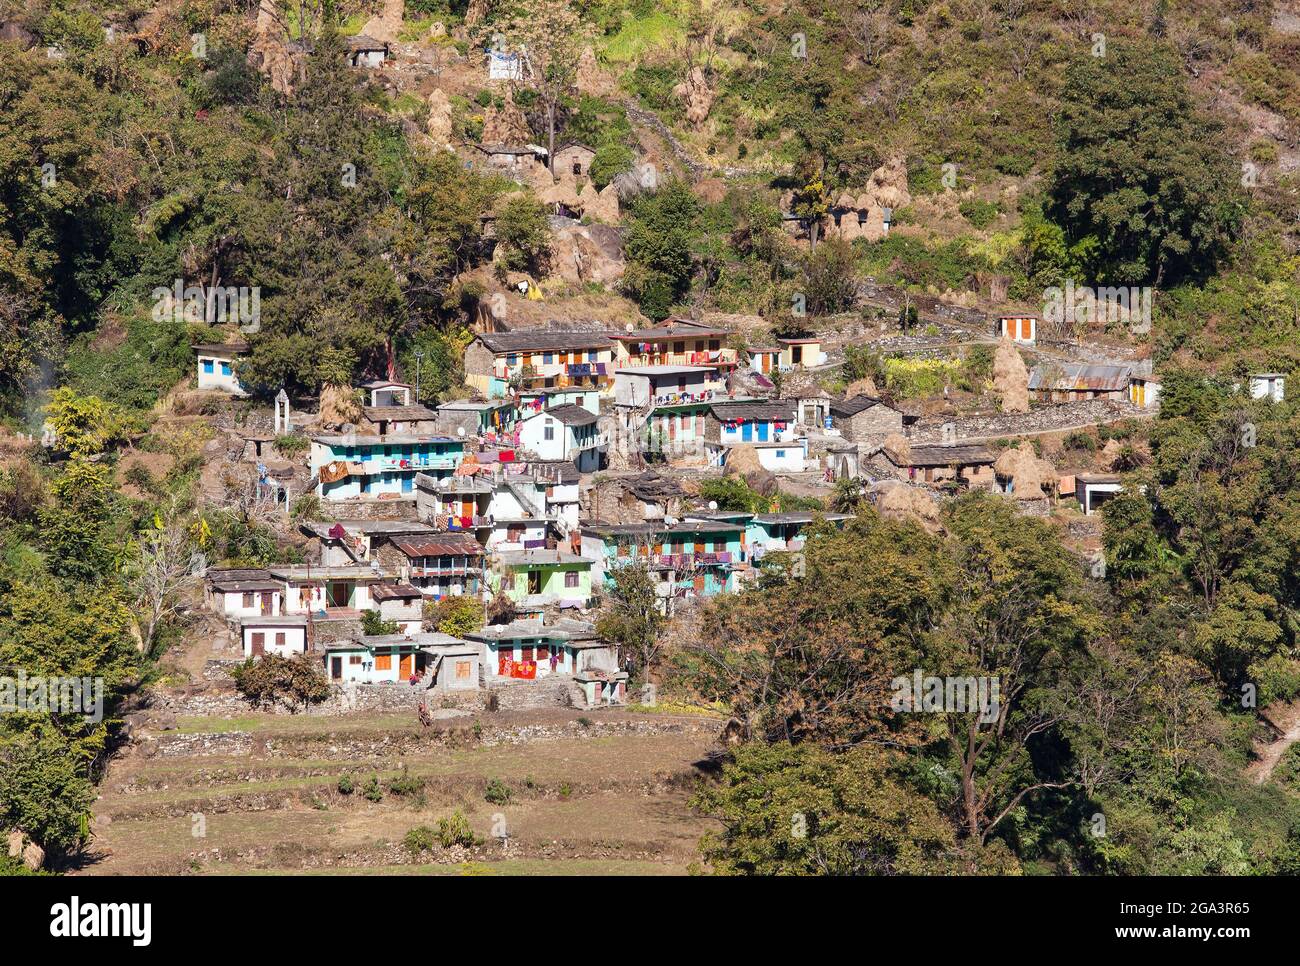 Champs en terrasse et village près de la ville de Joshimath dans Uttarakhand Inde, montagnes indiennes Himalaya Banque D'Images